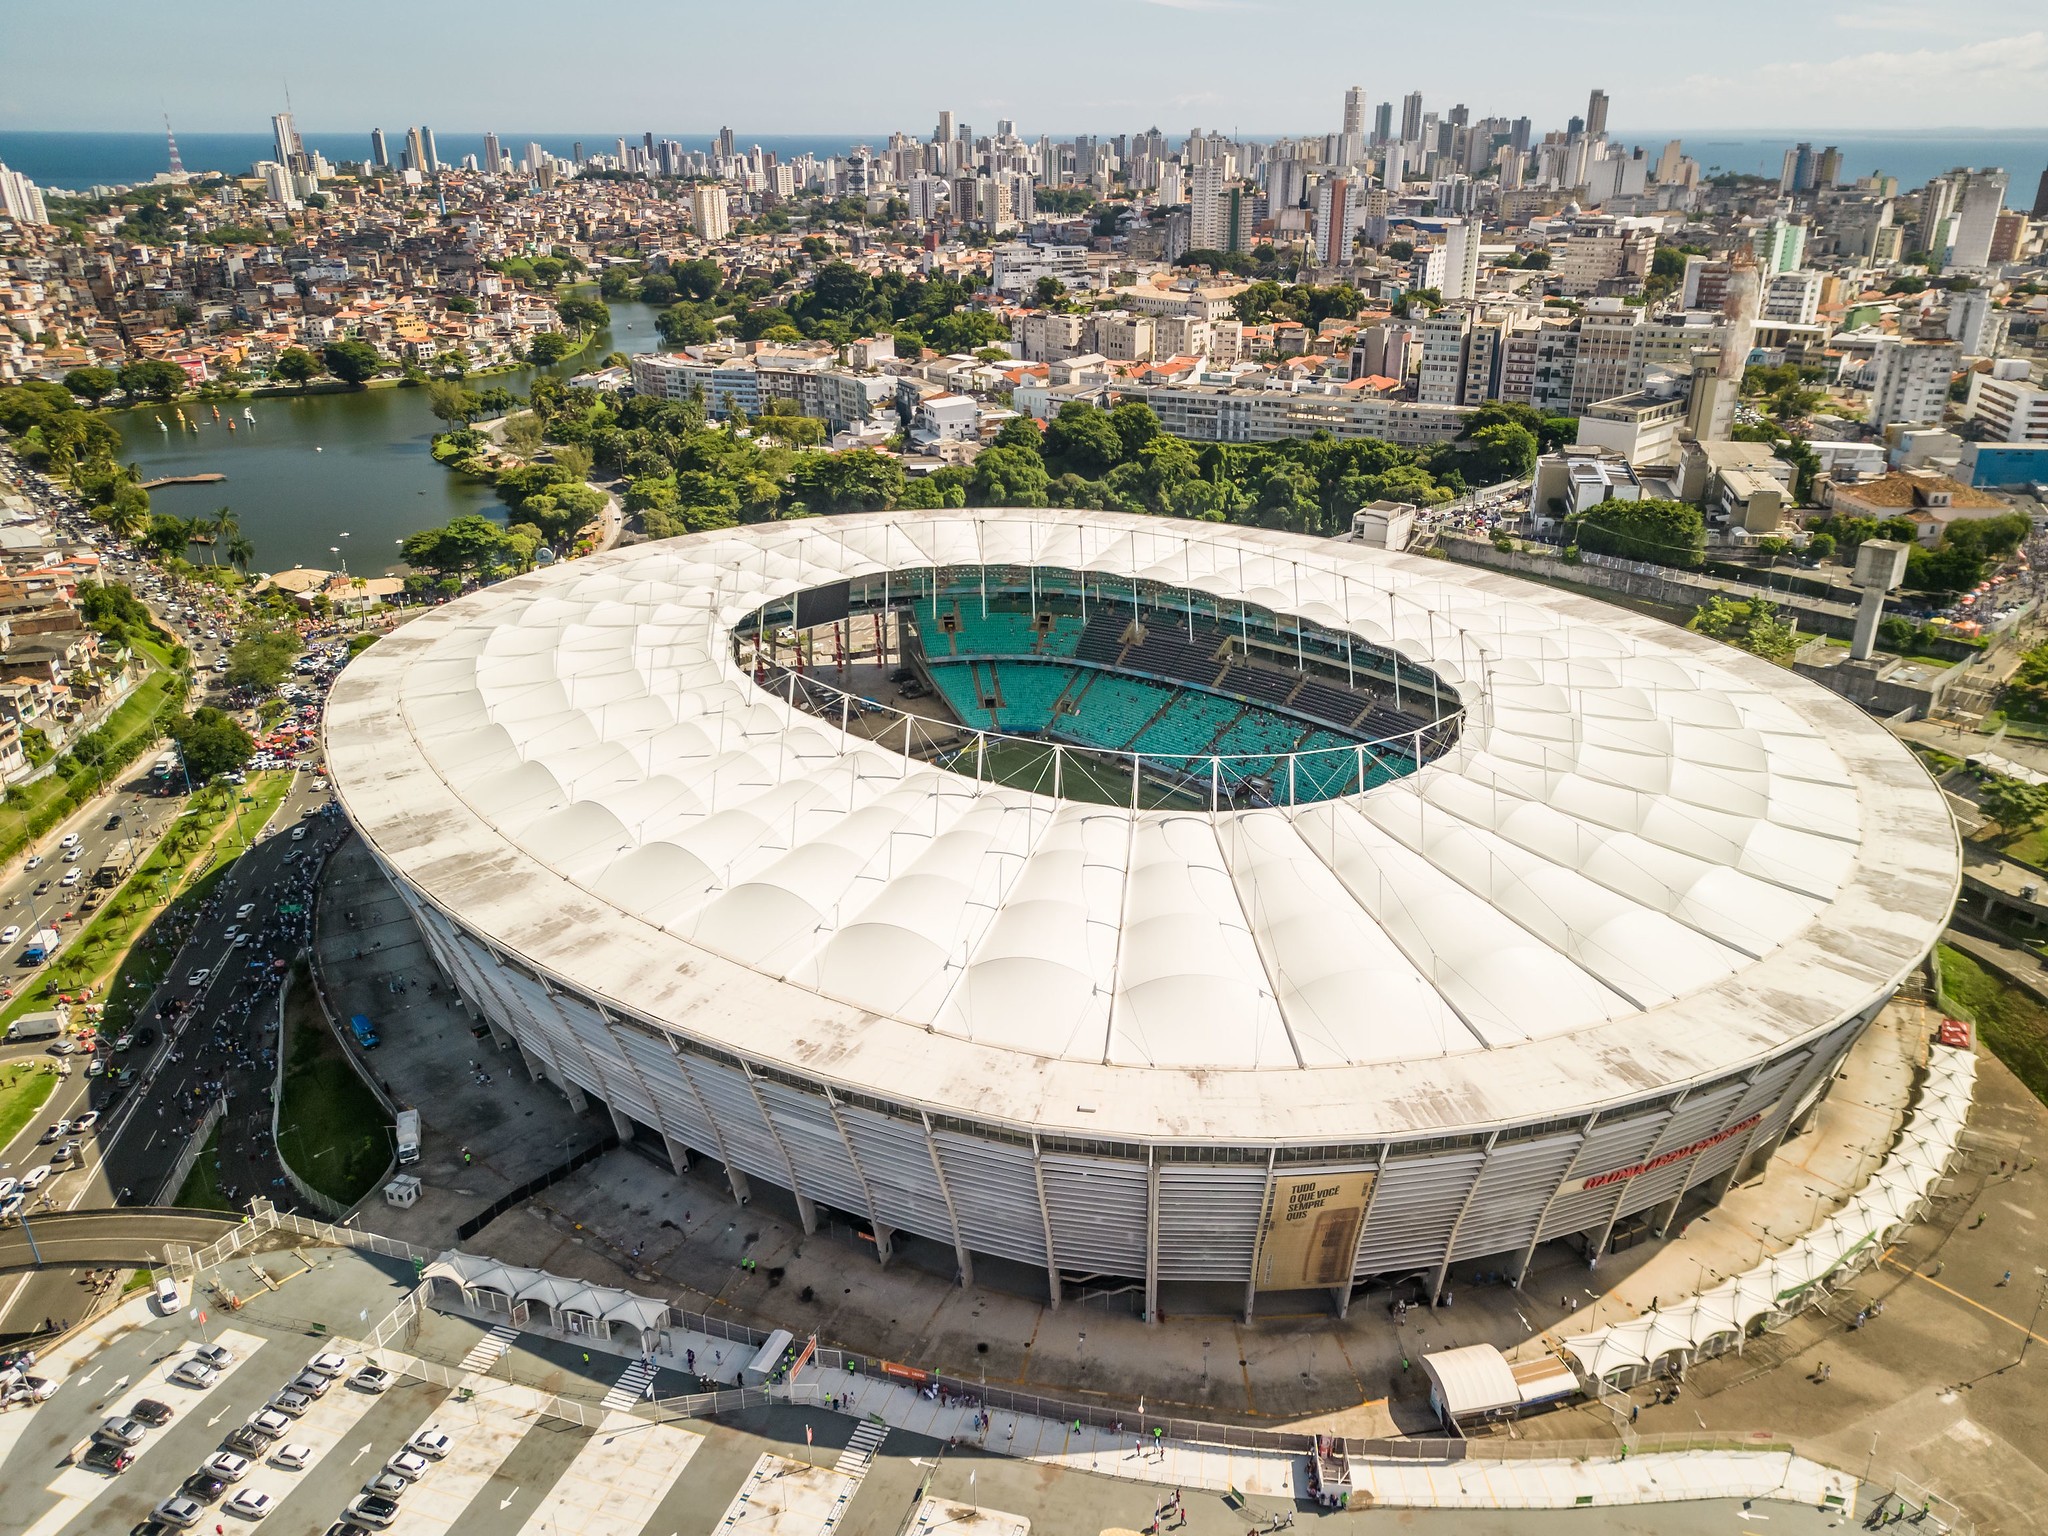 Arena Fonte Nova 10 anos: de Copa do Mundo a beatle, ge lista momentos marcantes do estádio